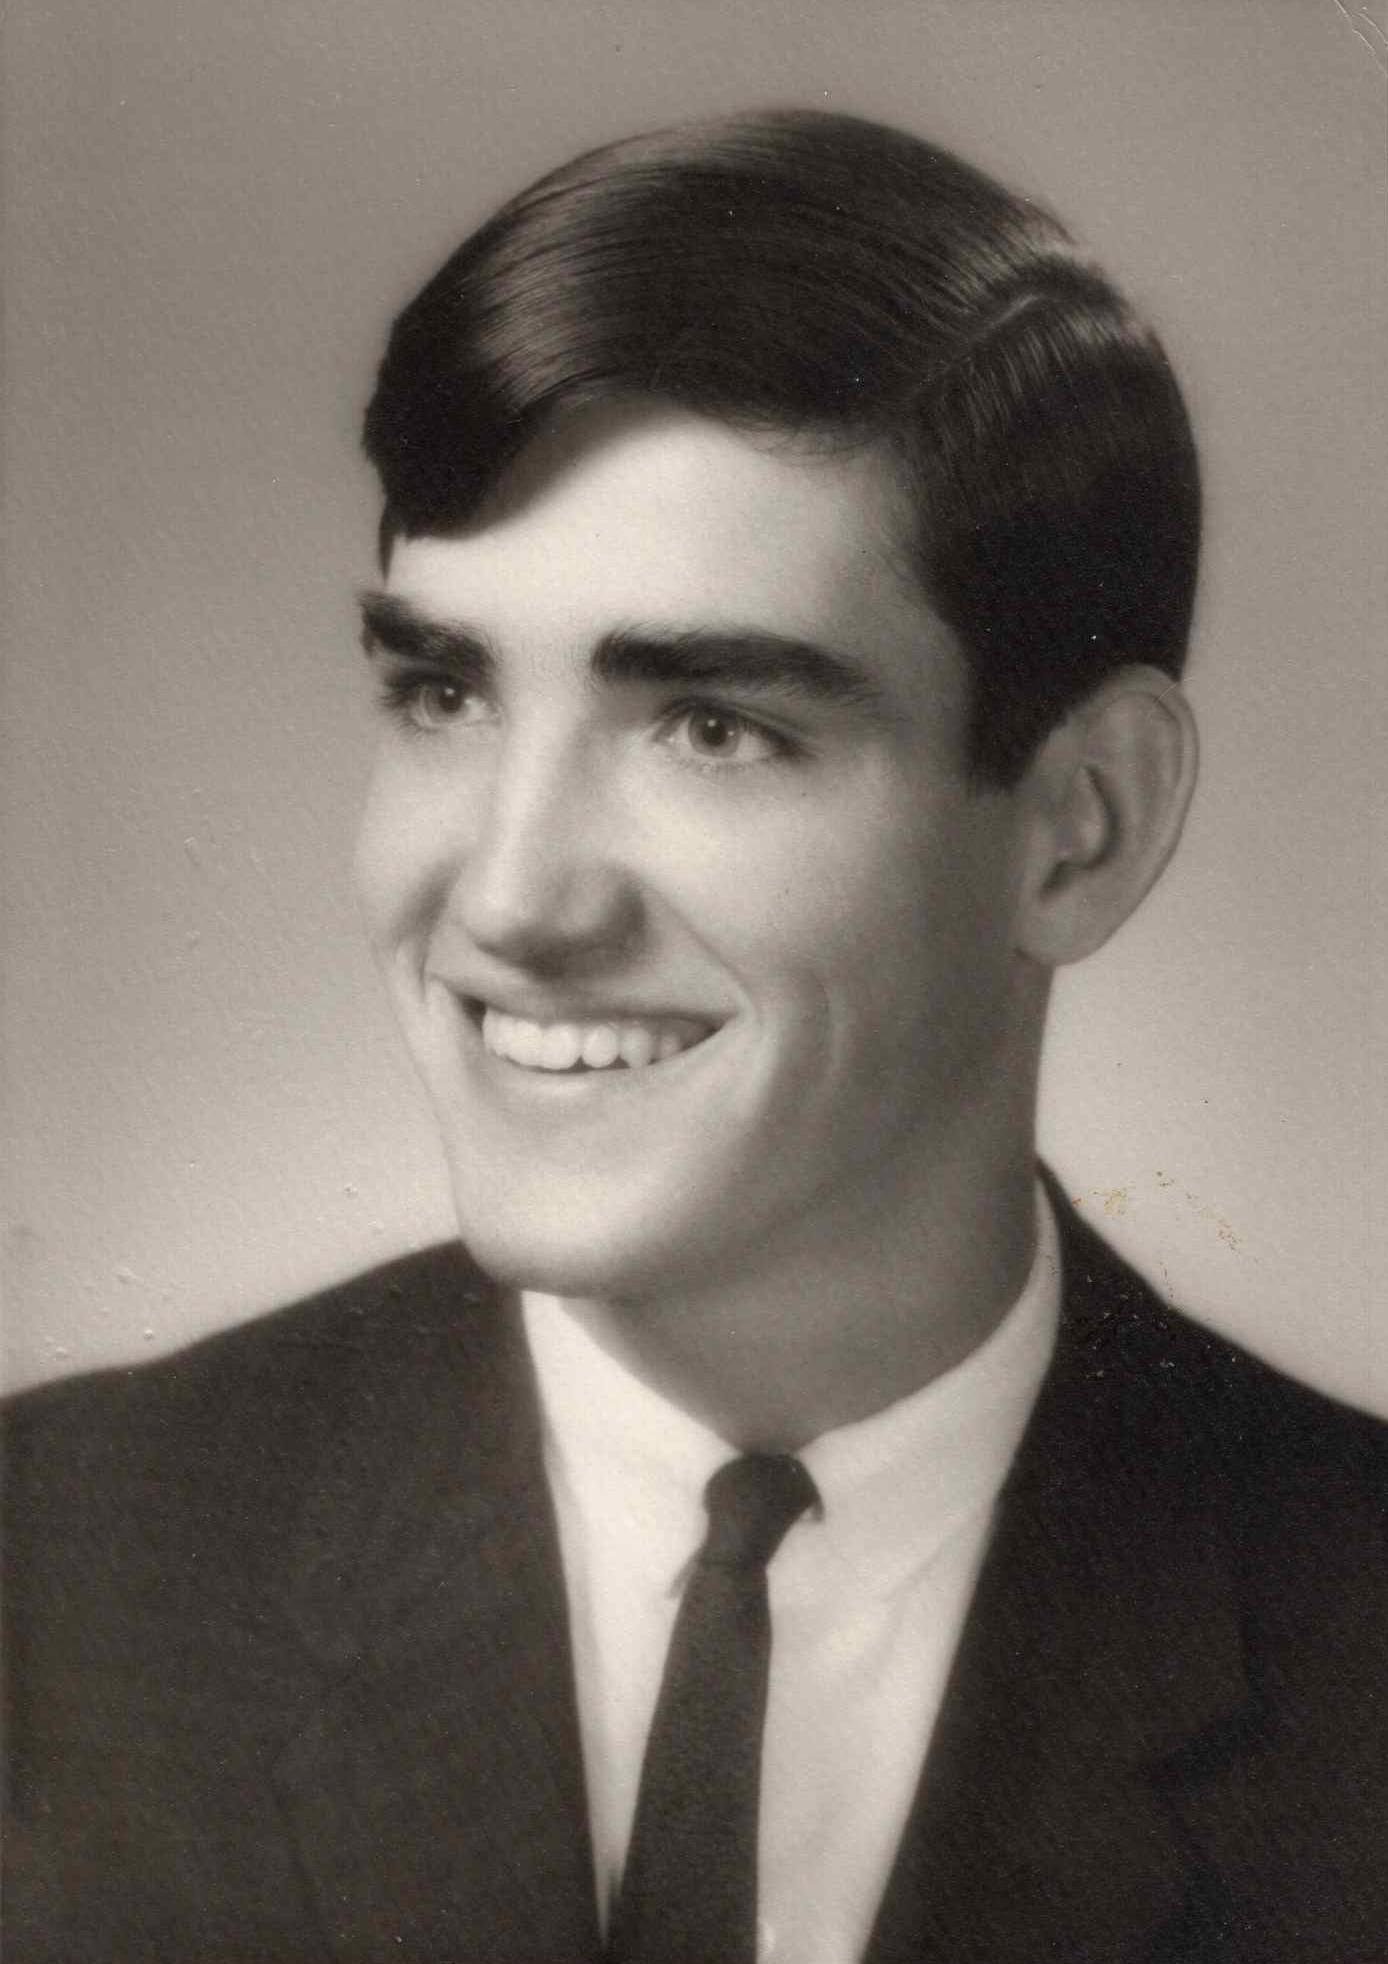 A high school graduation portrait of Ron Vanscoyk, 1967.